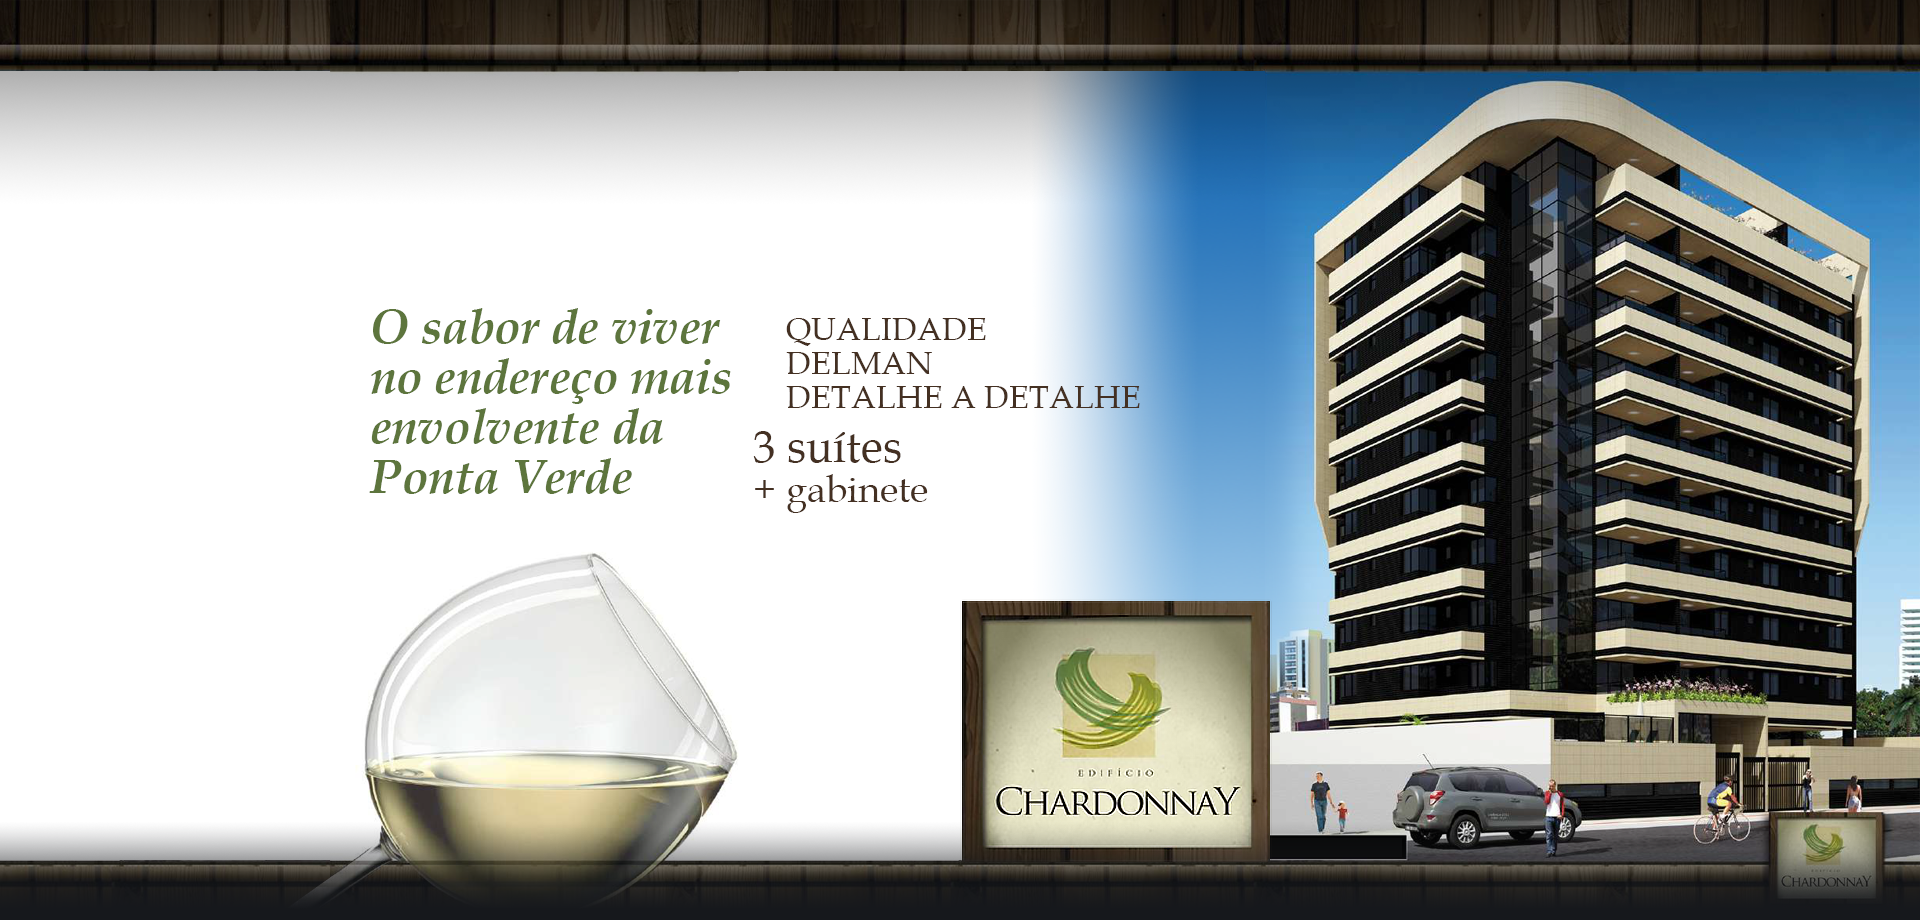 Edifício Chardonnay